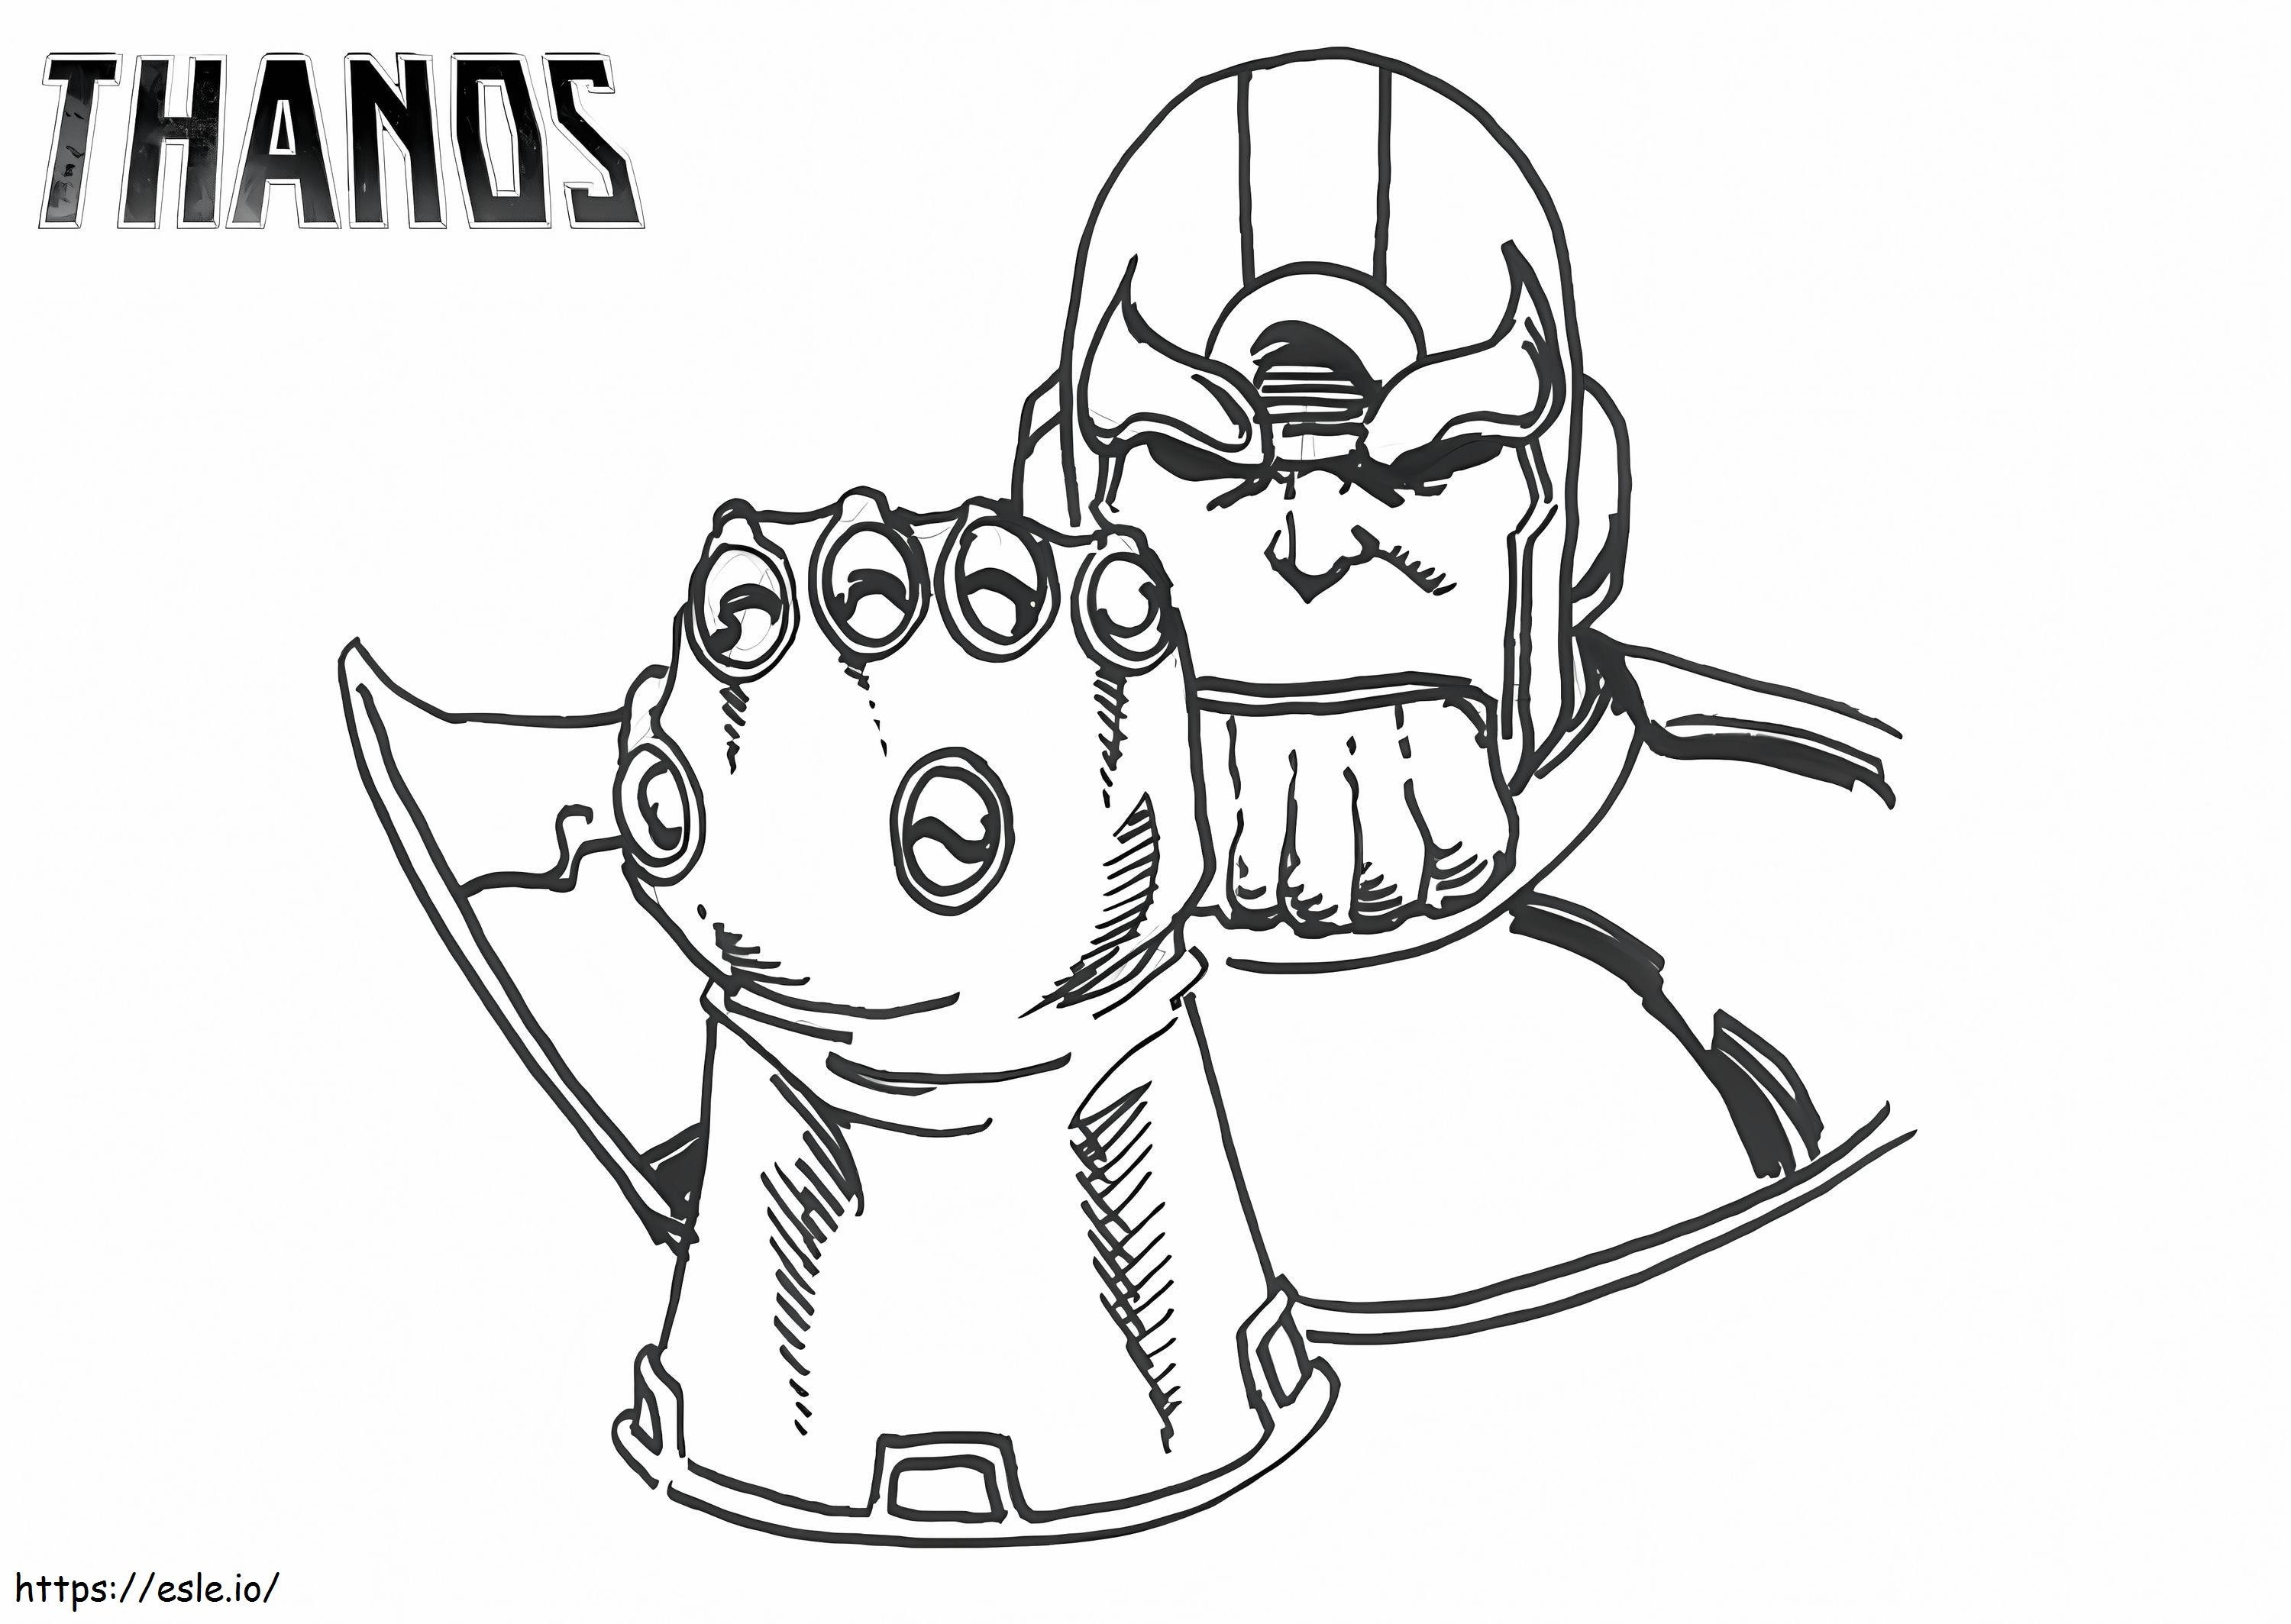 Thanos básico com manopla do infinito para colorir